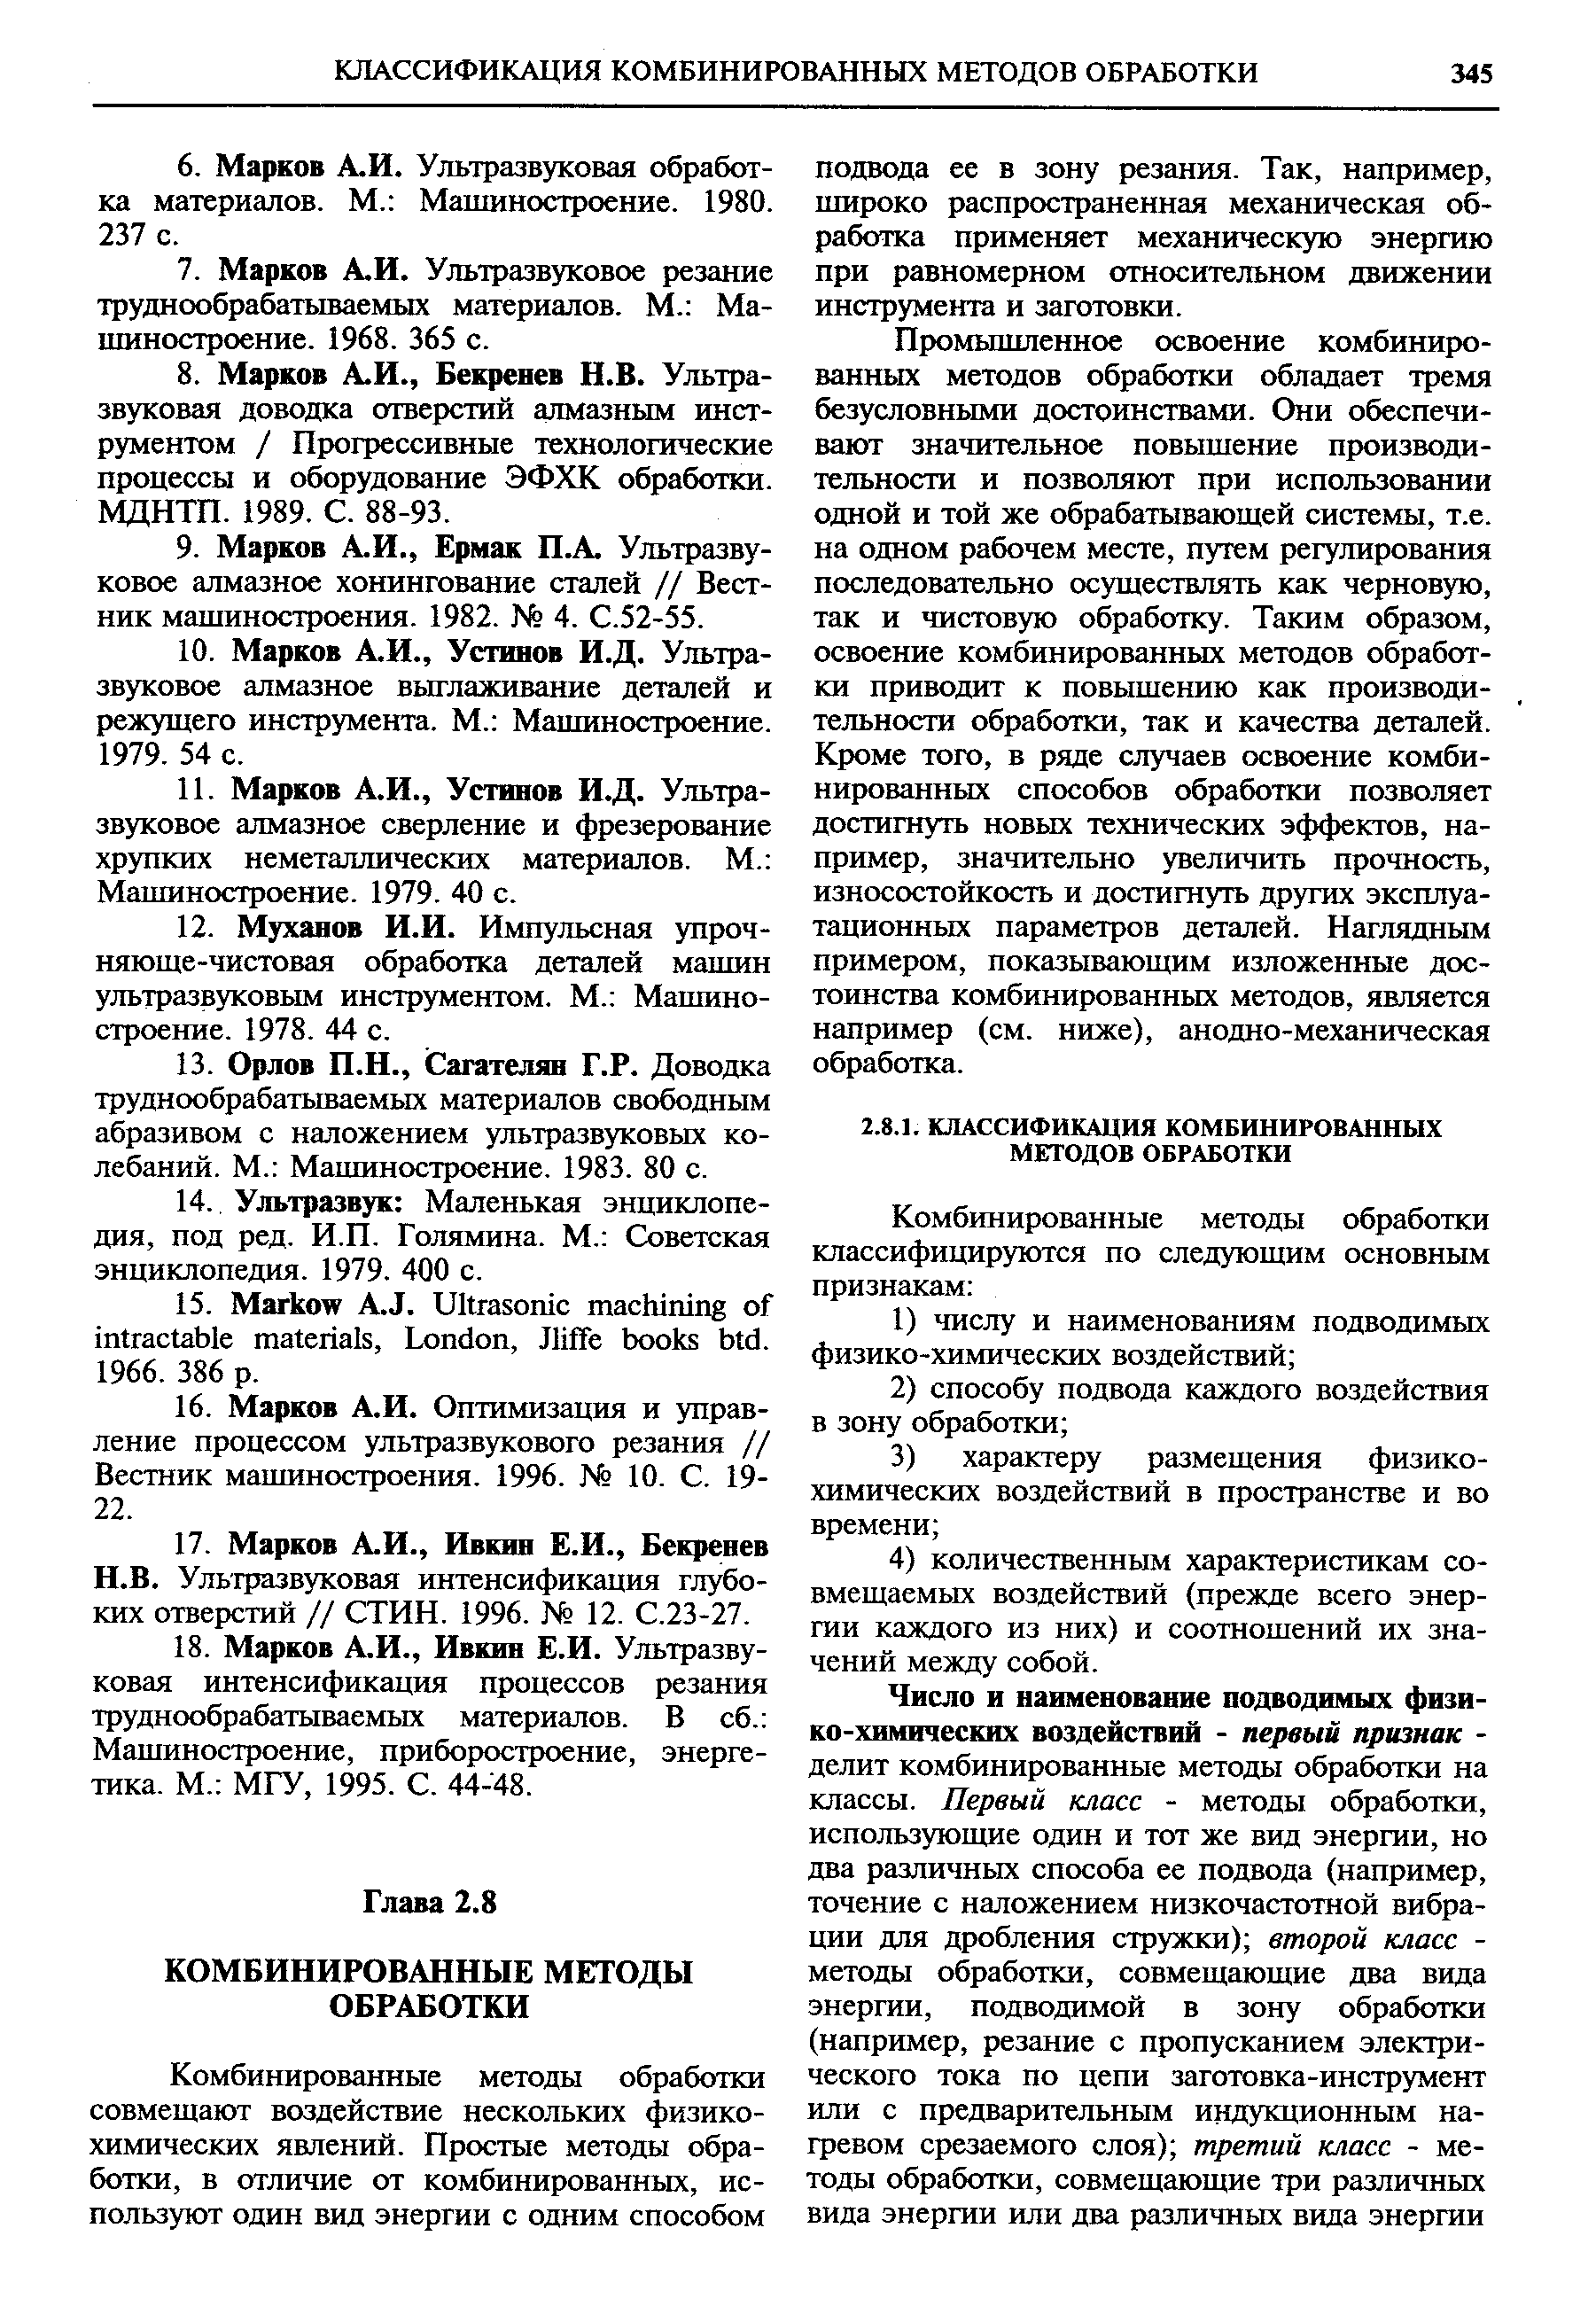 Ультразвуковая интенсификация глубоких отверстий // СТИН. 1996. 12. С.23-27.
